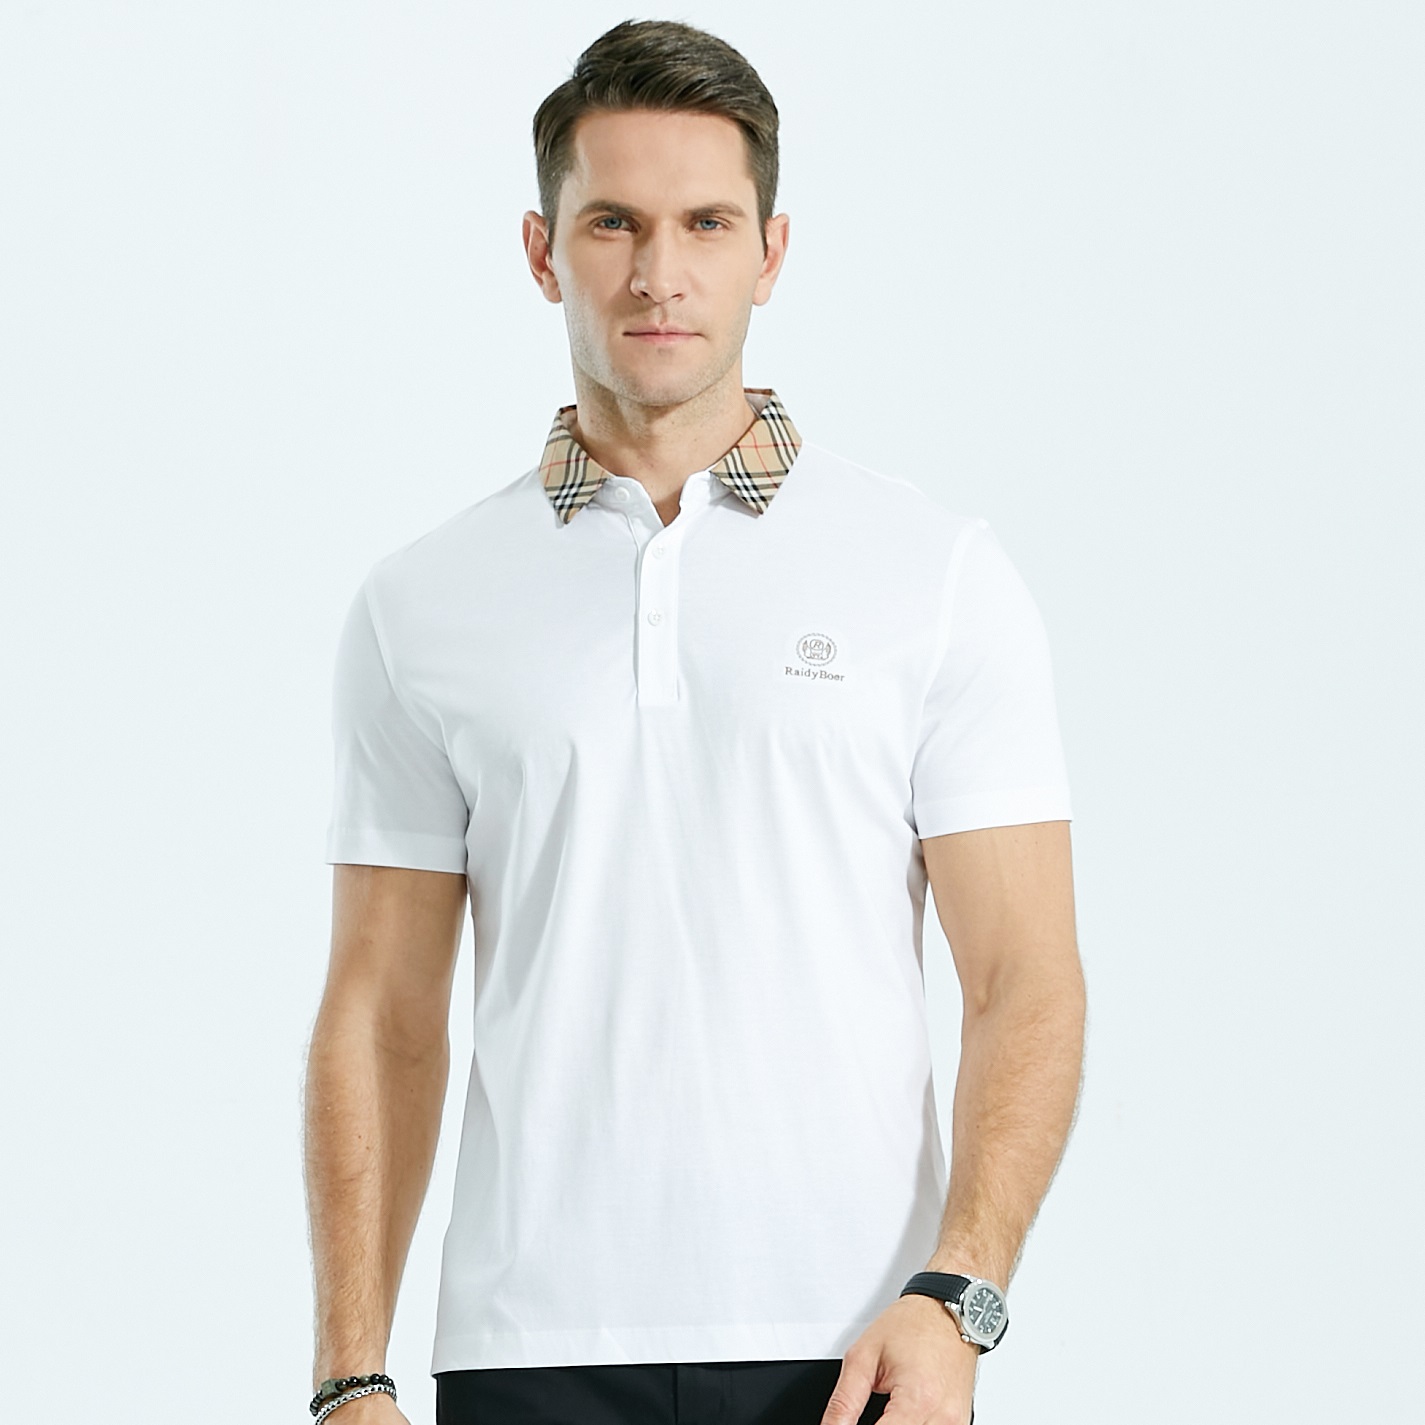 Fabriek goedkope blanco poloshirts op maat golf uniform poloshirt voor heren